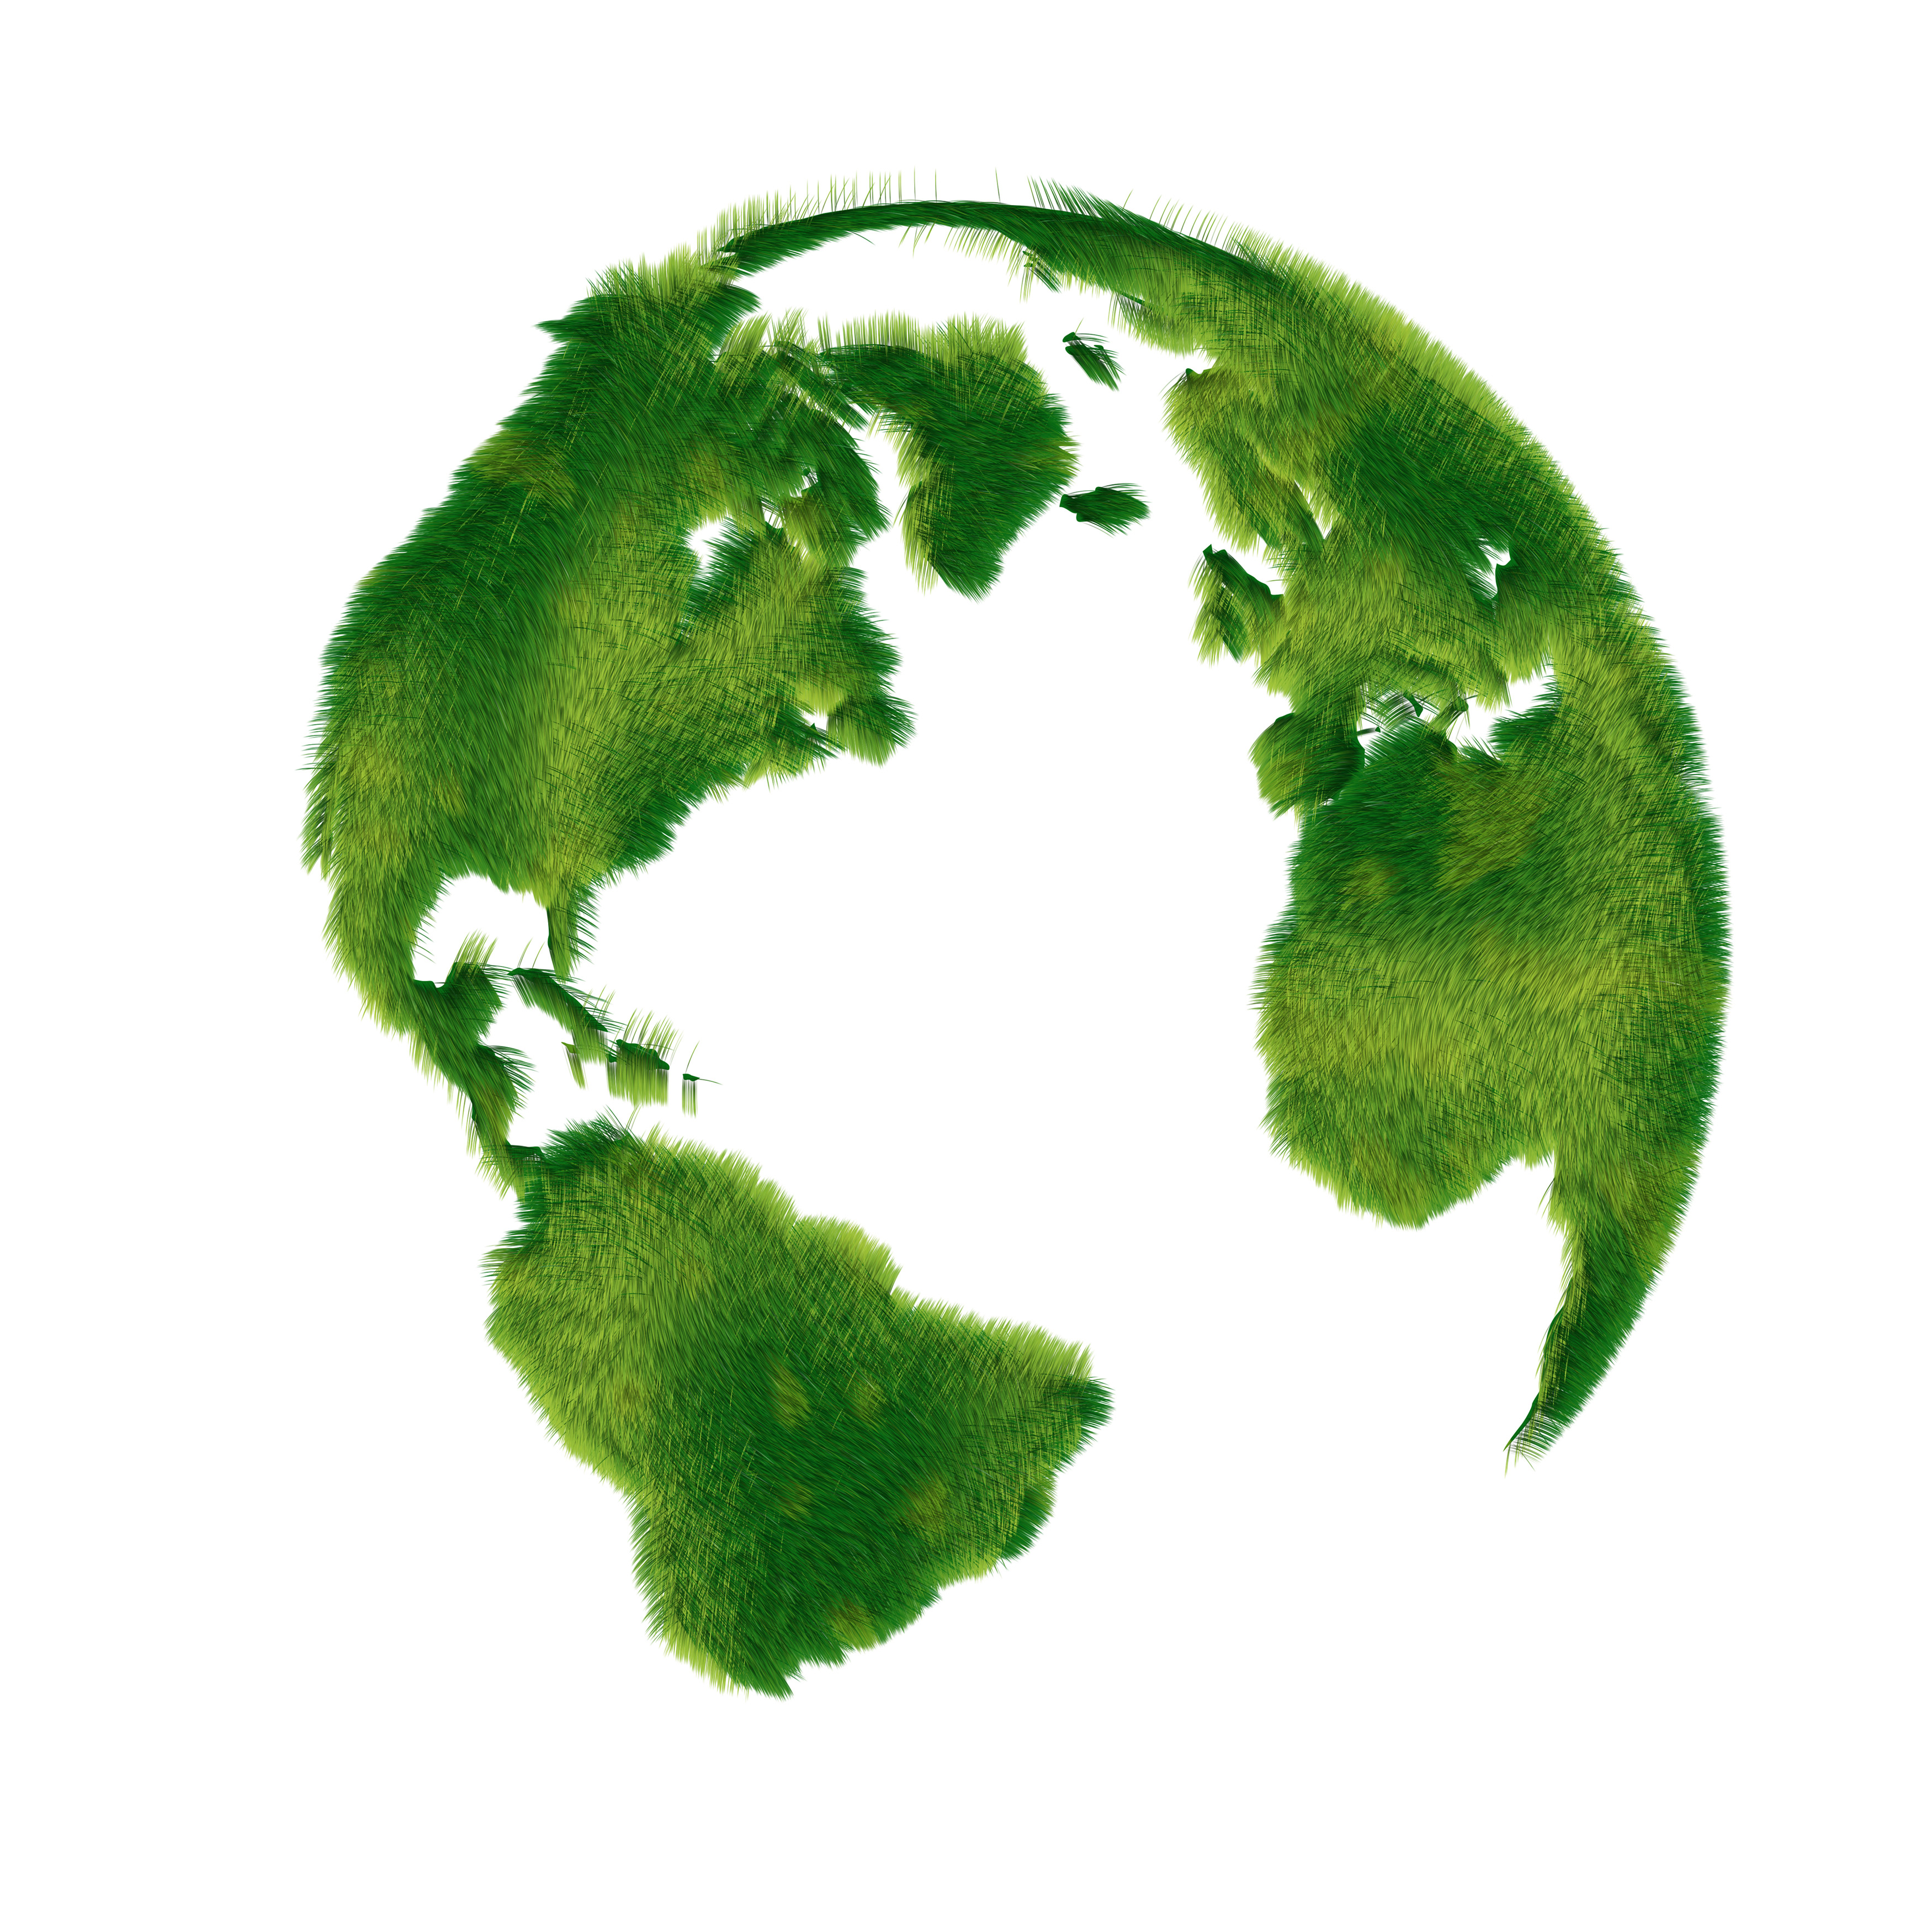 قسمت های سبز کره زمین